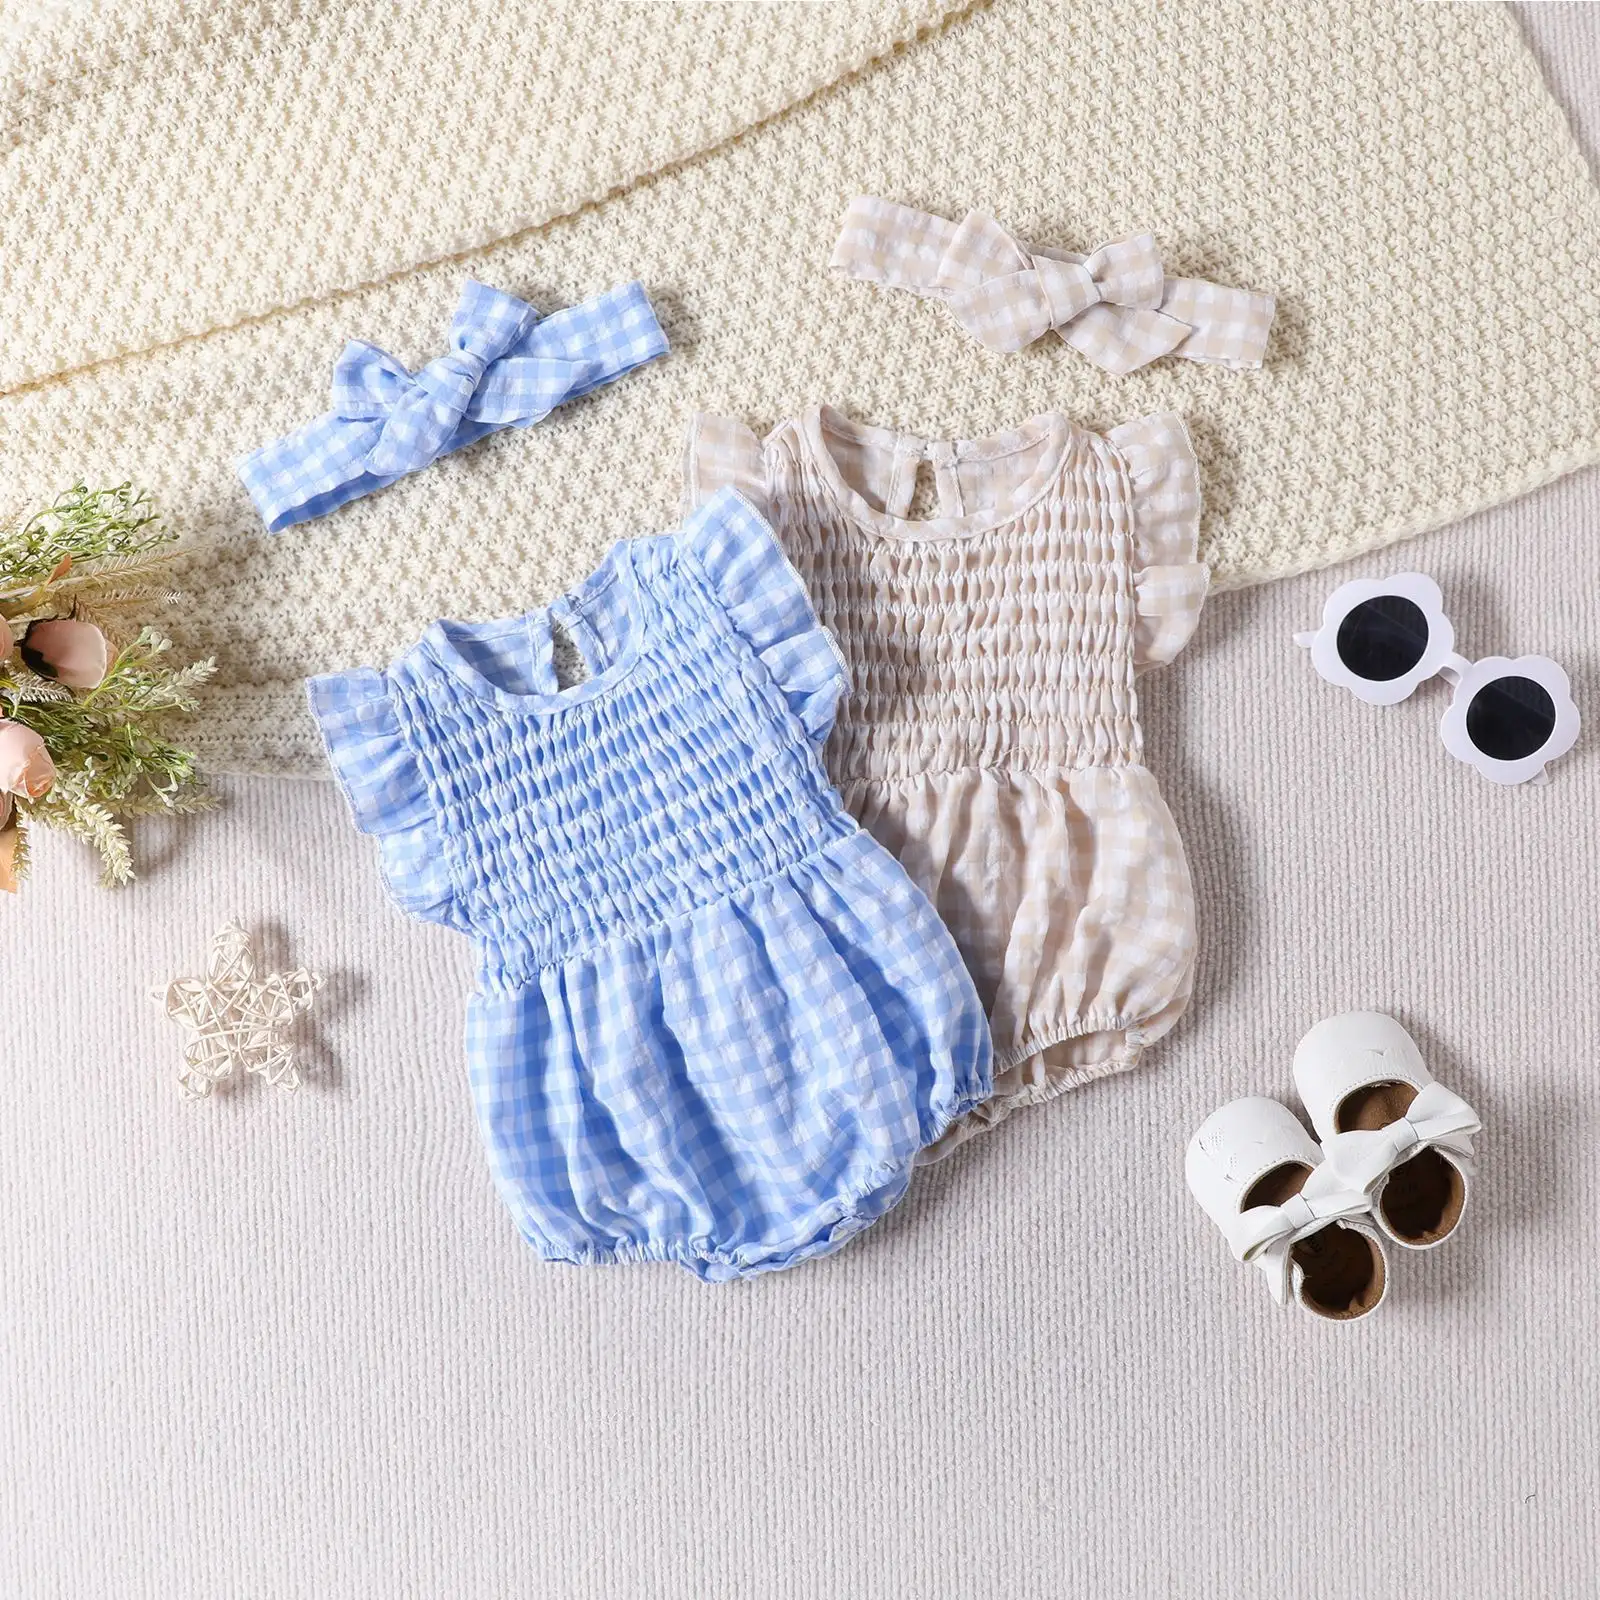 Nuovo arrivo morbido plaid bambino pagliaccetto di cotone 0-18 mesi vestiti della neonata